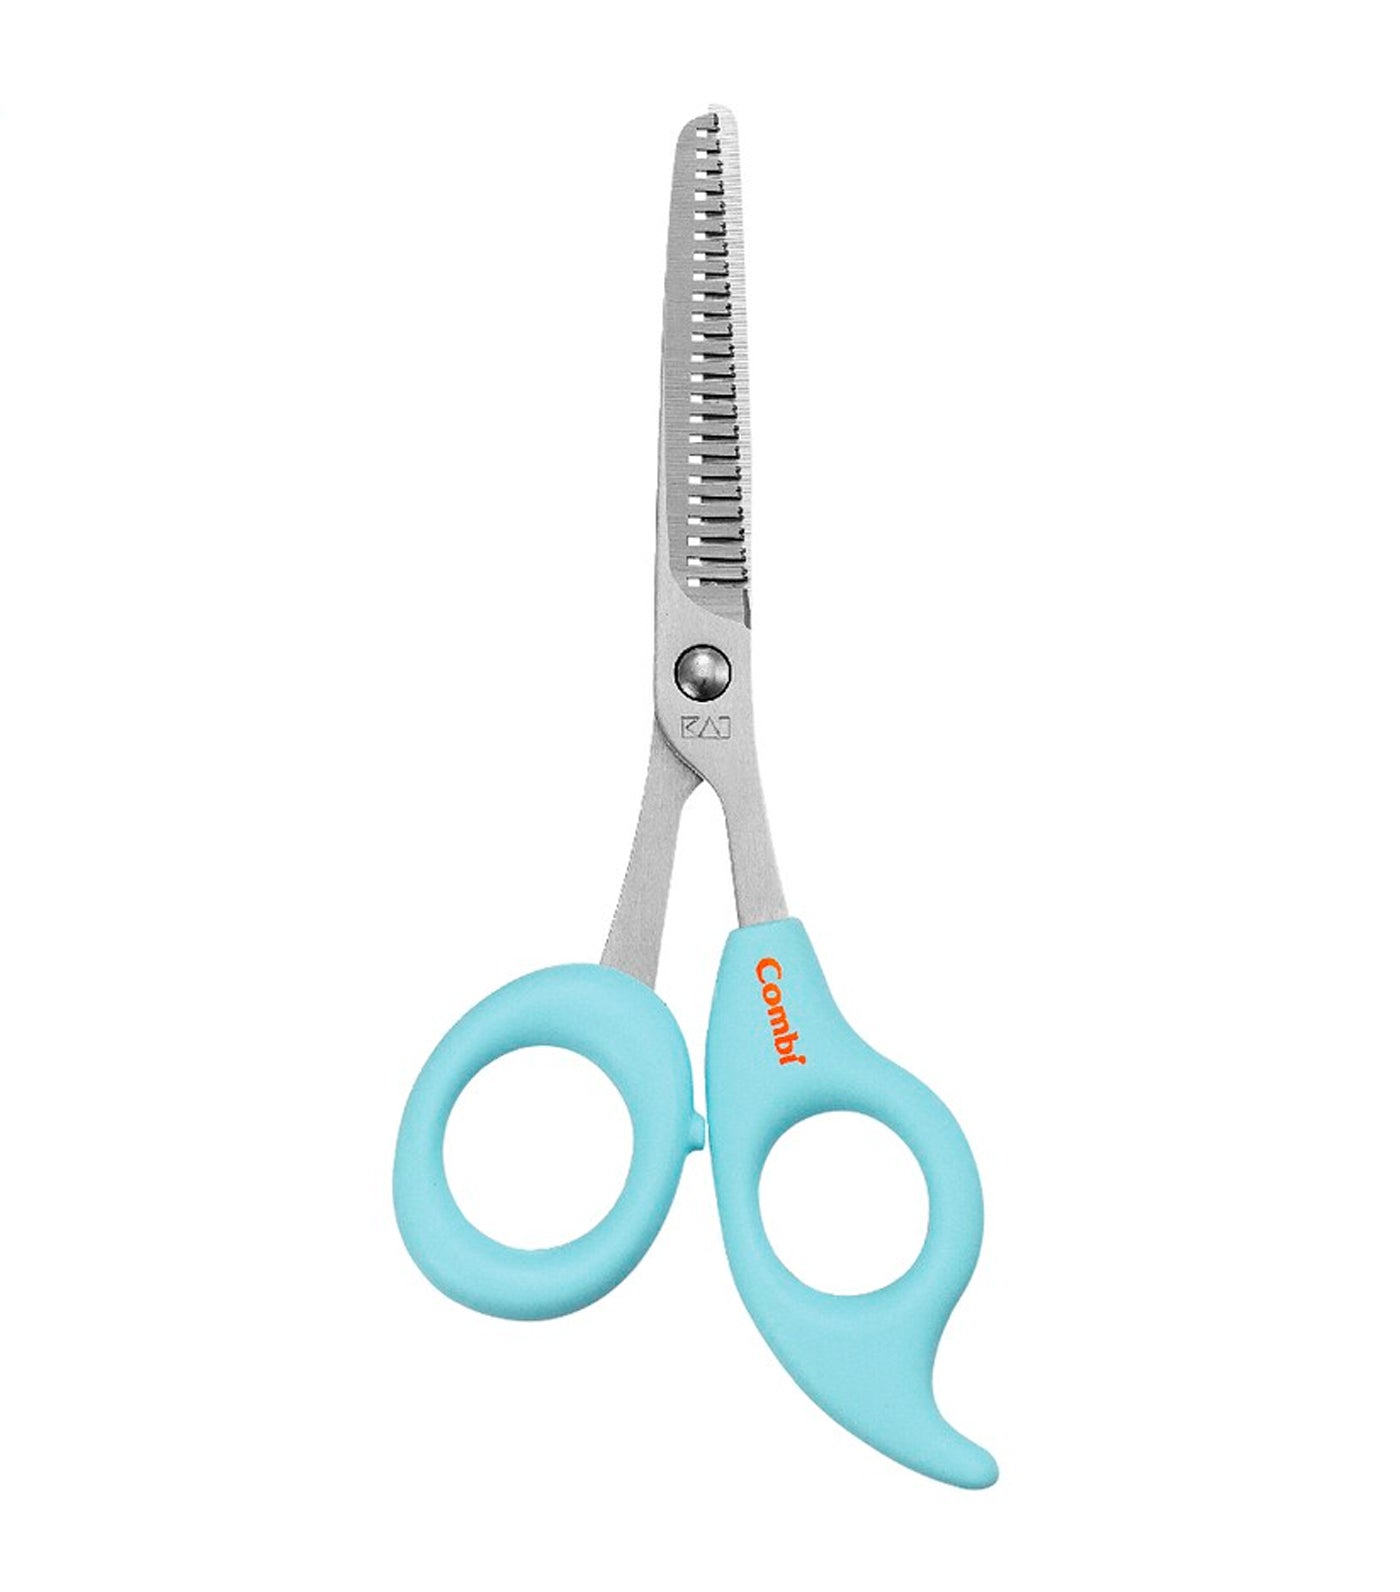 combi baby label combing scissors